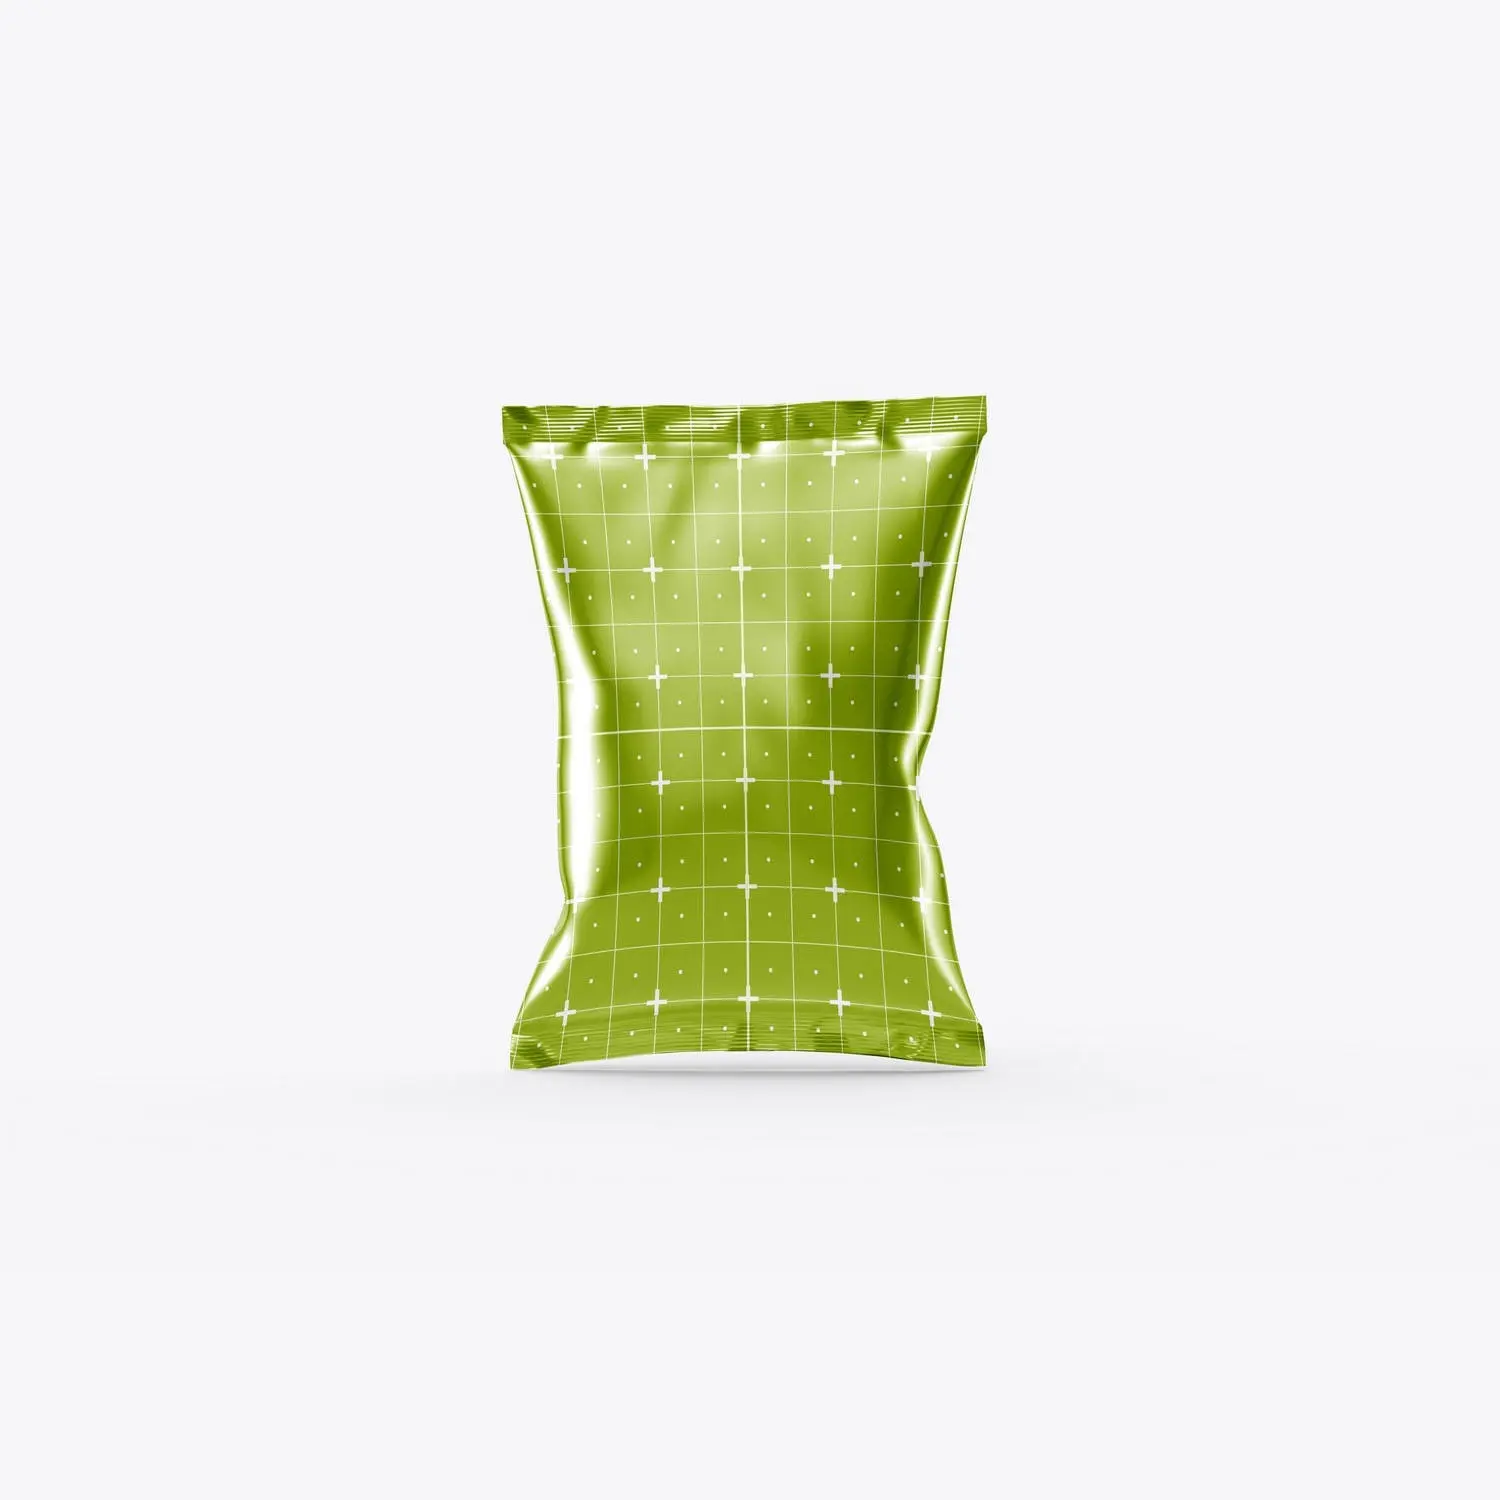 塑料充气零食薯片袋包装设计样机模板